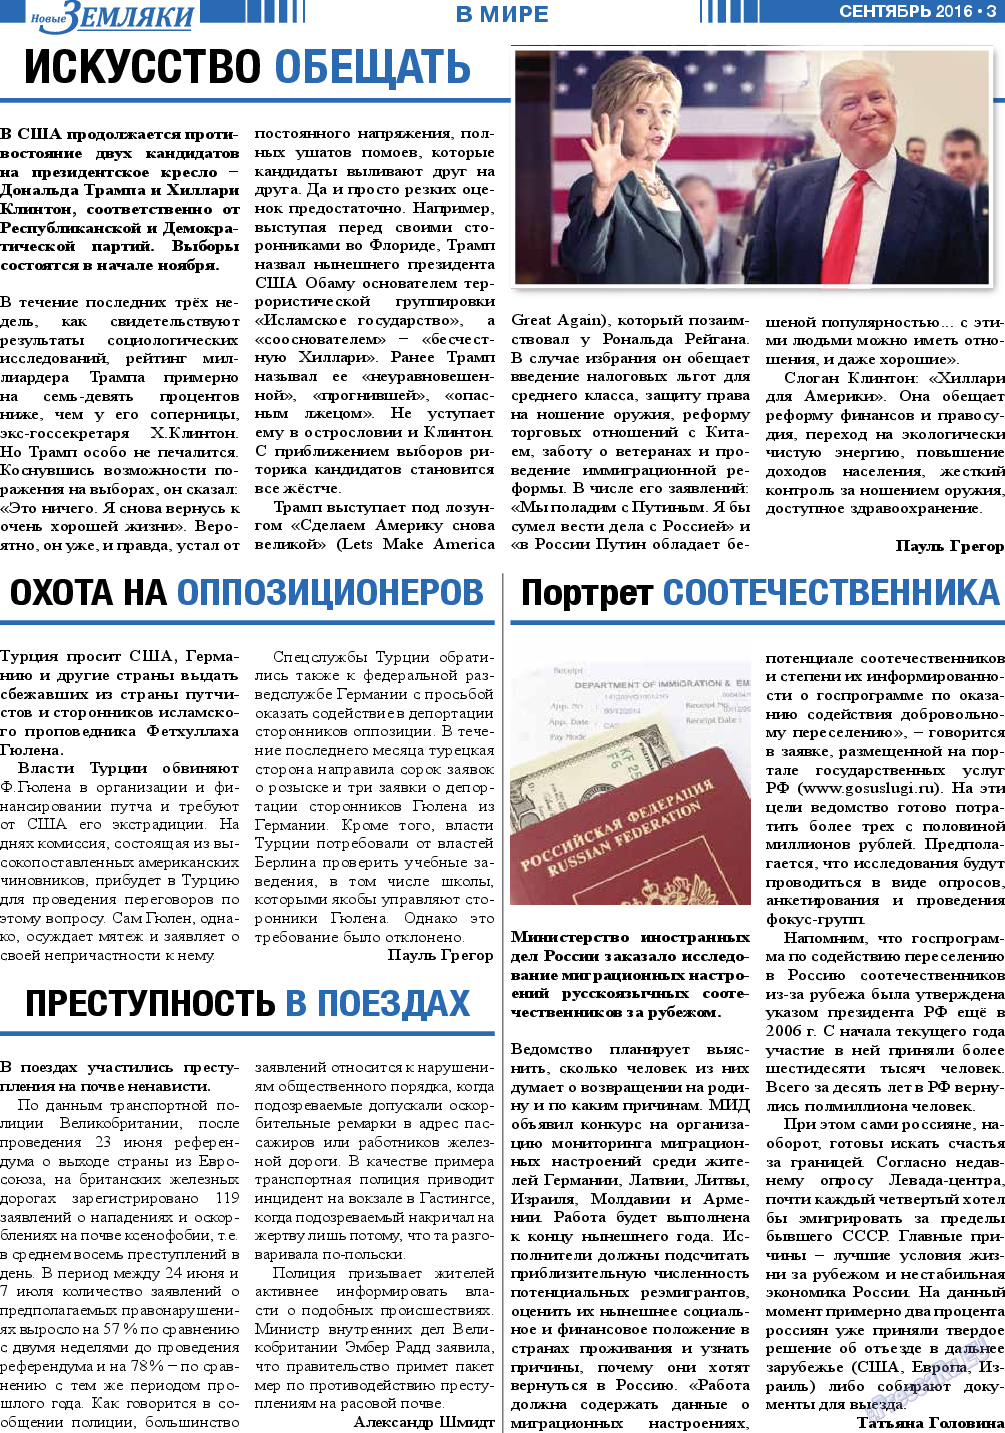 Новые Земляки, газета. 2016 №9 стр.3